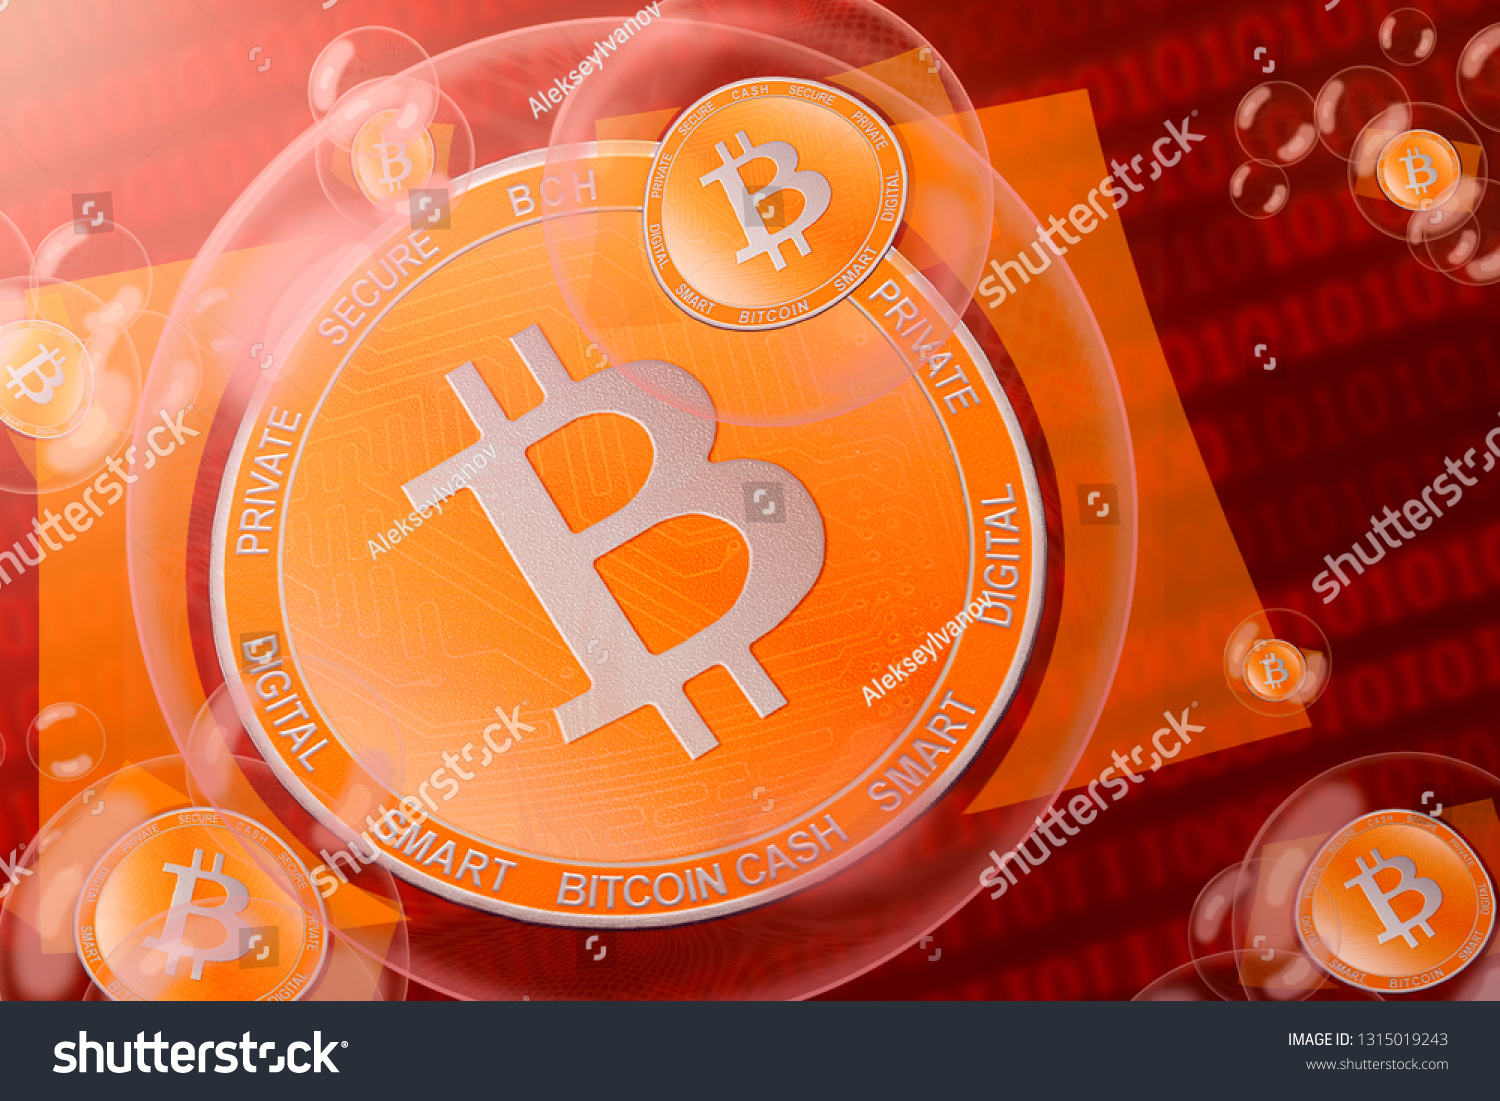 Bitcoin Cash Crash Bitcoin Cash h Stock Illustration